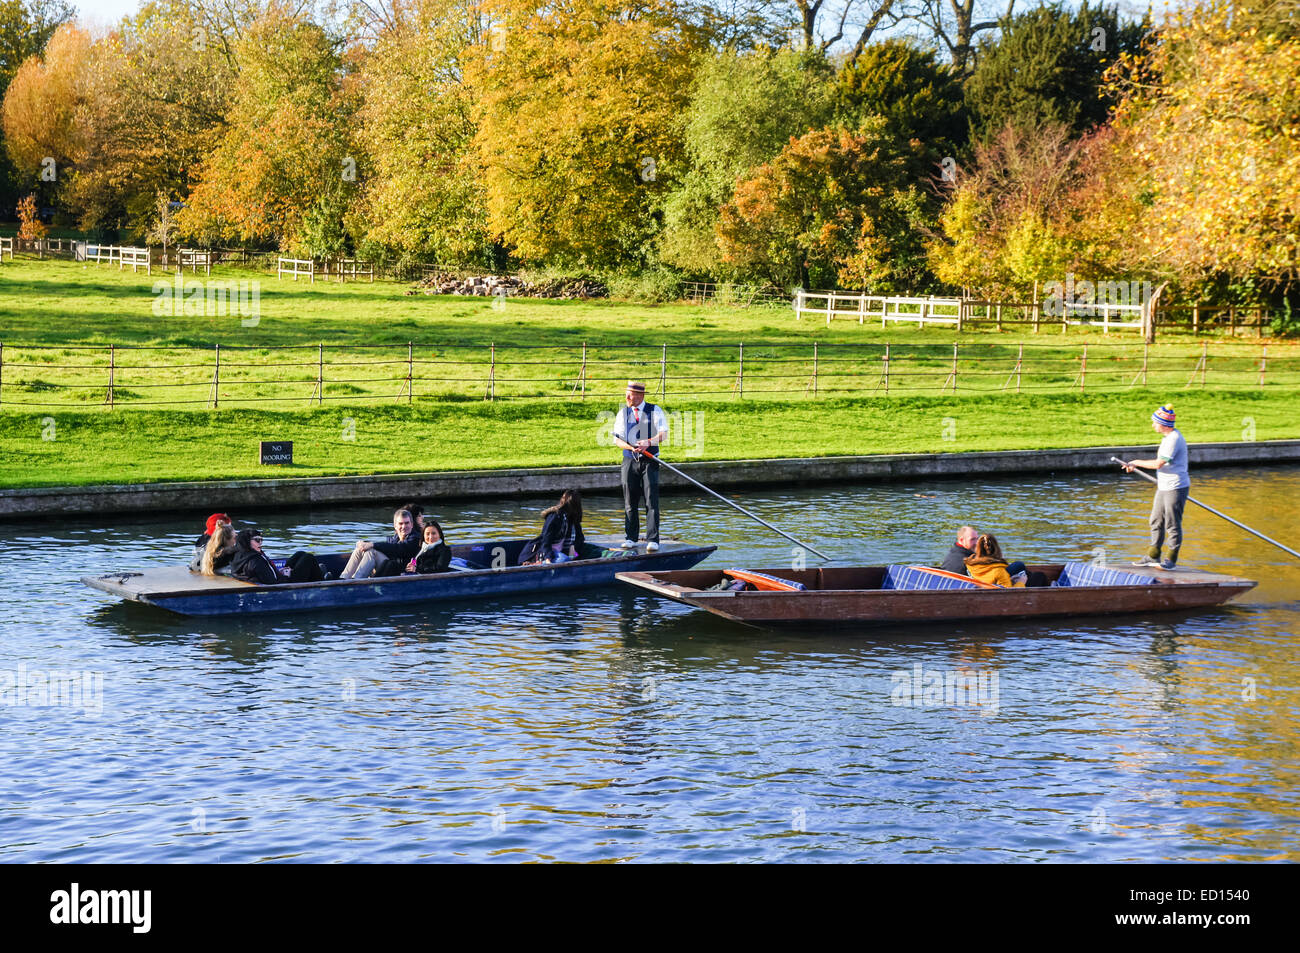 À l'automne en barque sur la rivière Cam Cambridge Cambridgeshire, Angleterre Royaume-Uni UK Banque D'Images